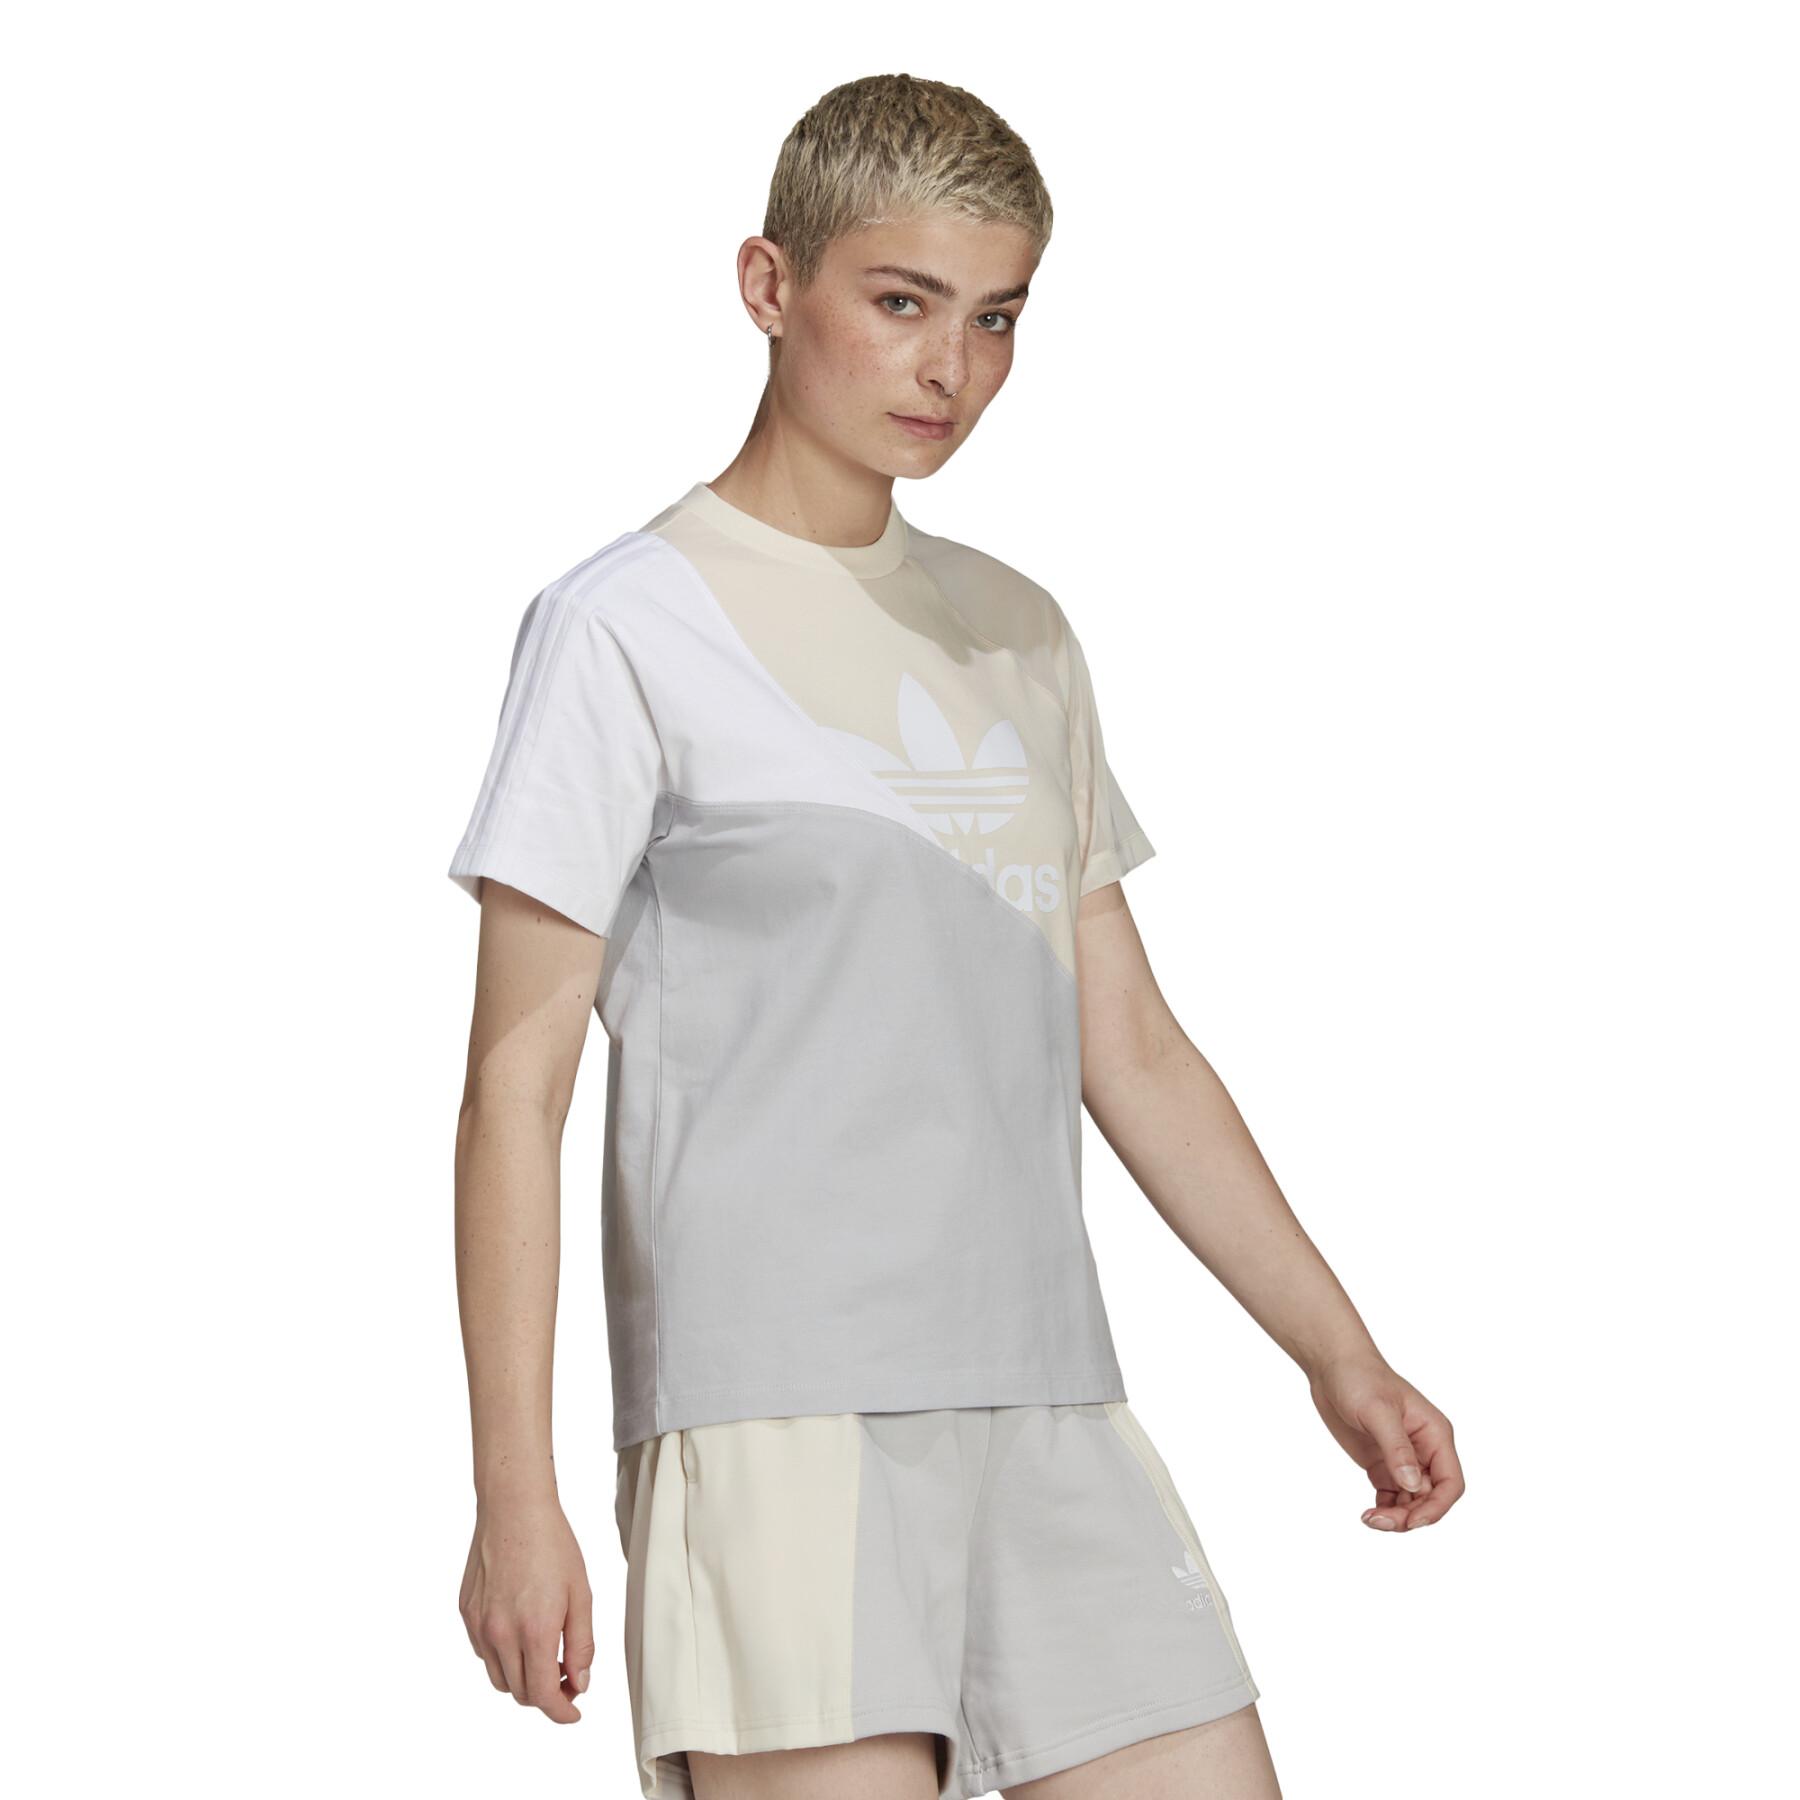 Camiseta de manga corta para mujer adidas Originals Adicolor Split Trefoil